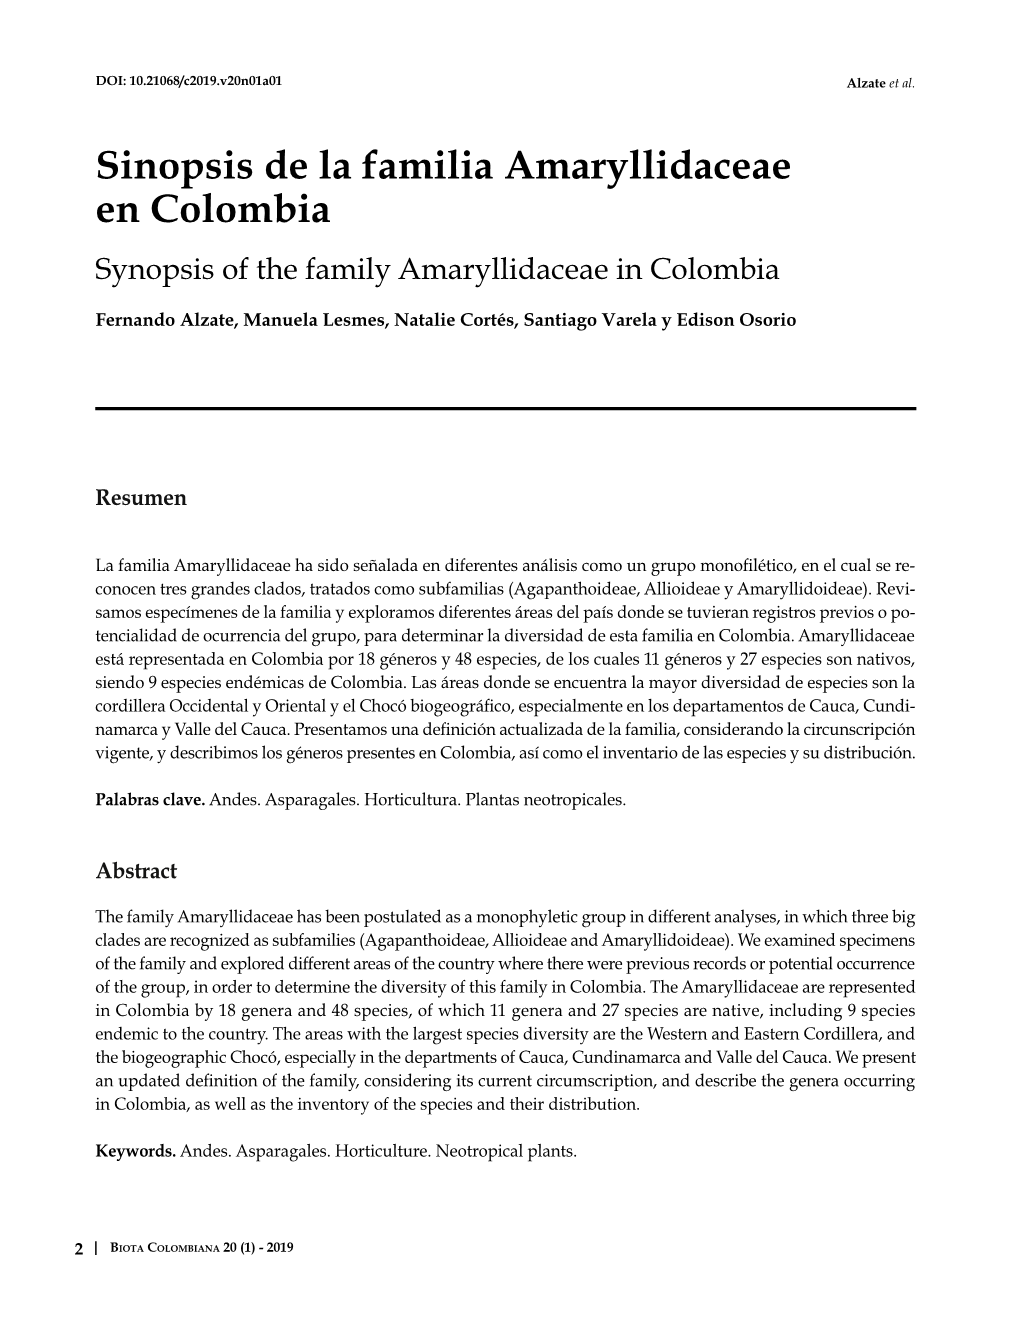 Sinopsis De La Familia Amaryllidaceae En Colombia Synopsis of the Family Amaryllidaceae in Colombia